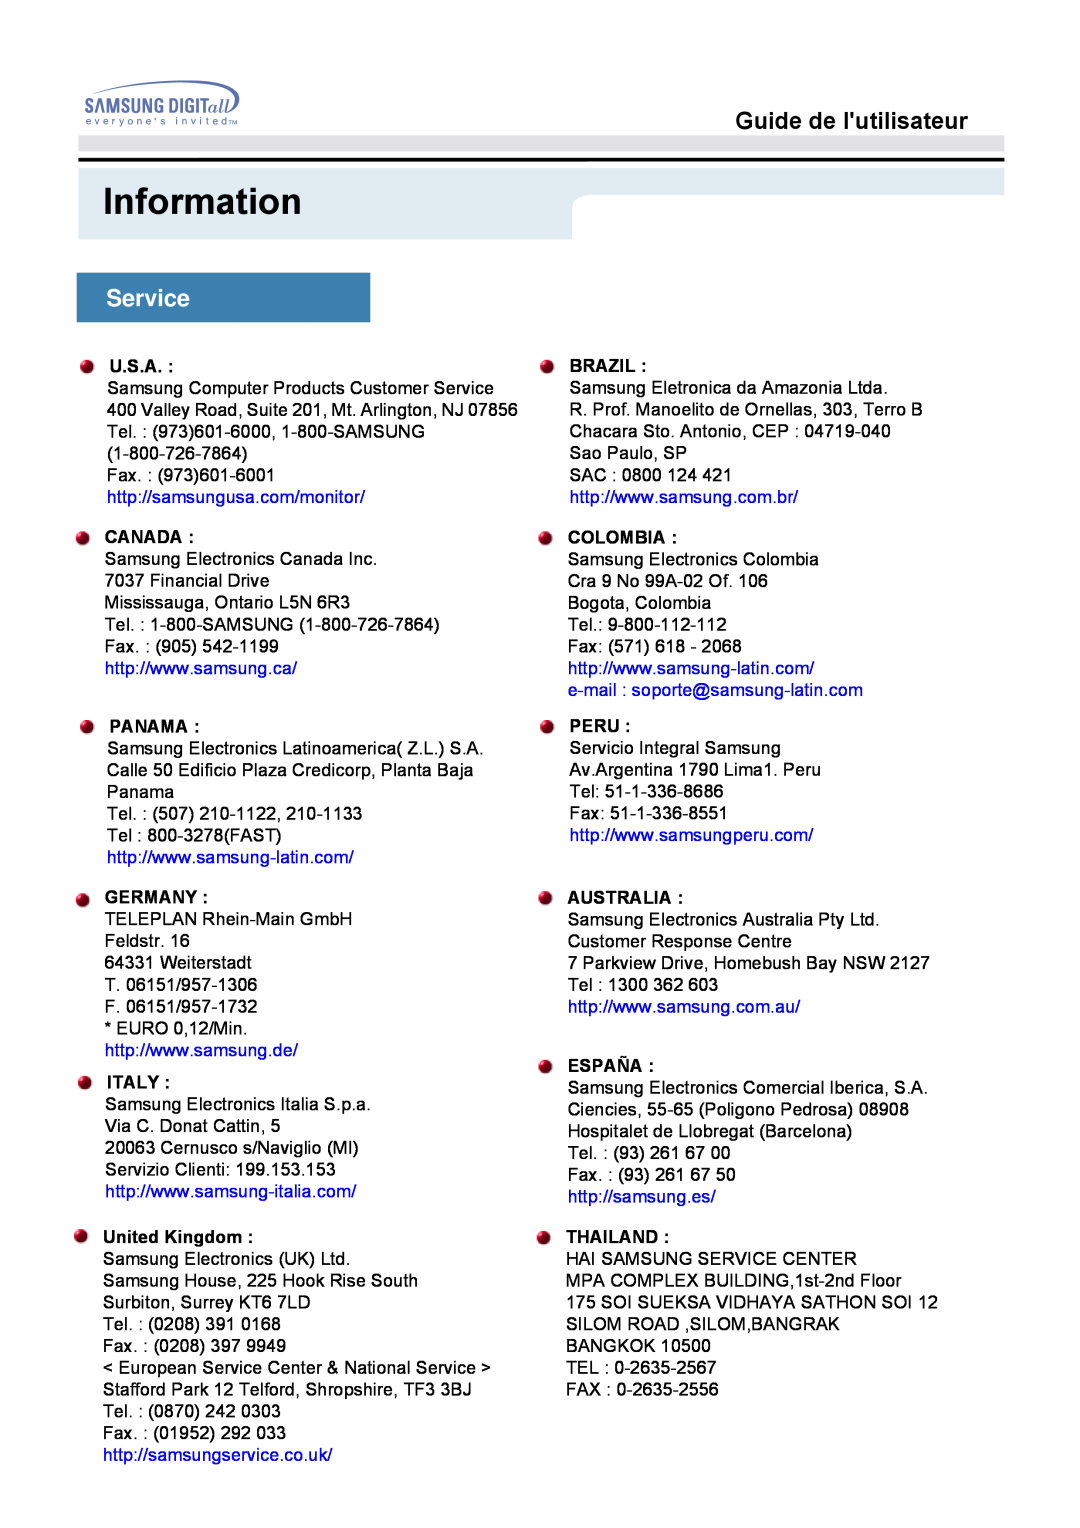 Samsung MO19PSDS/EDC Information, Service, Guide de lutilisateur, U.S.A, Brazil, http//samsungusa.com/monitor, Canada 